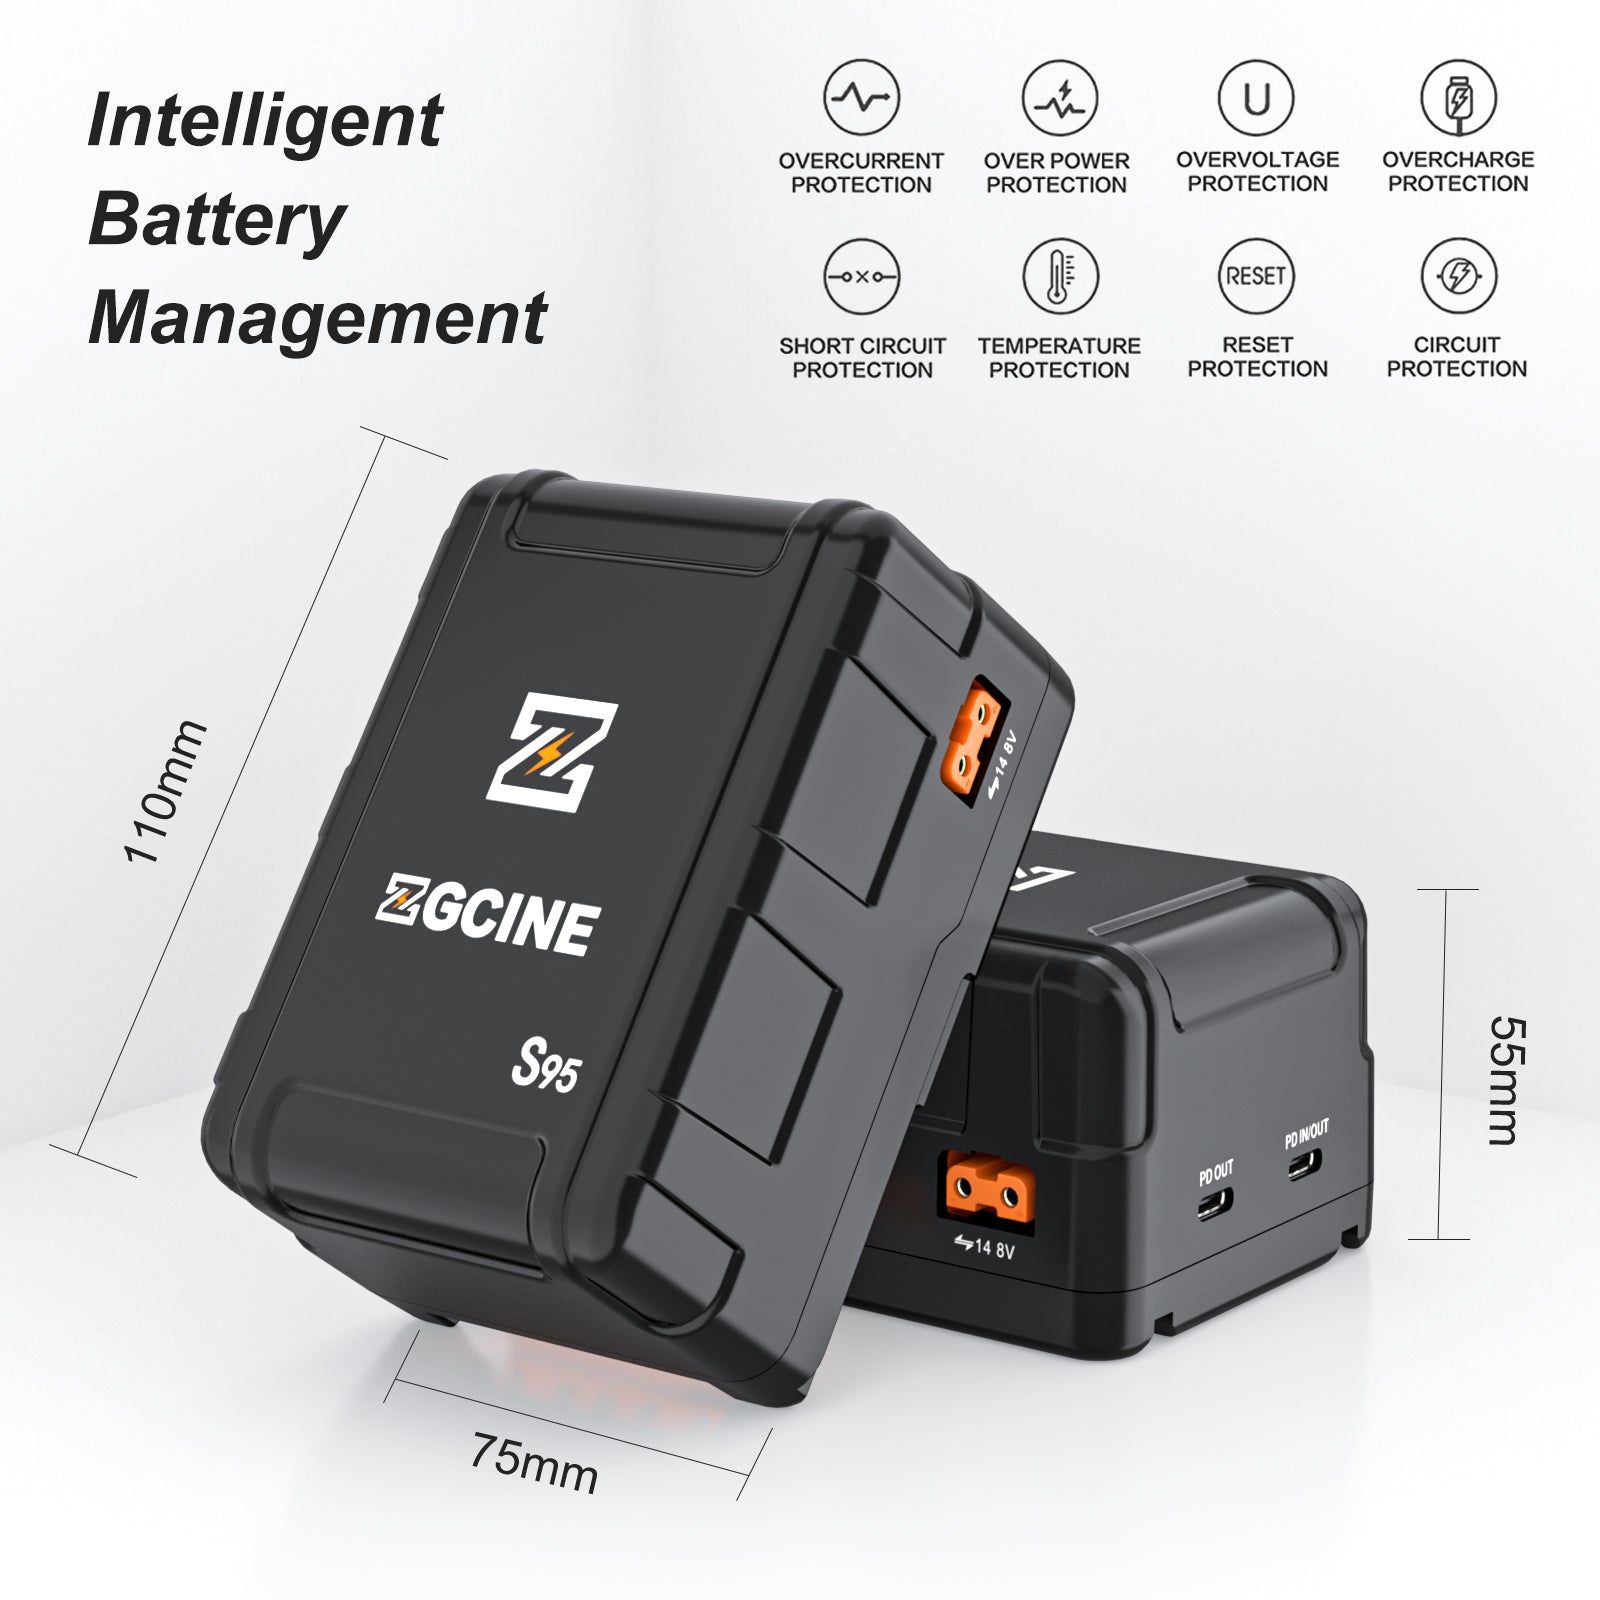  ZG-S95 V Mount Battery - Pin ZGCINE S95 